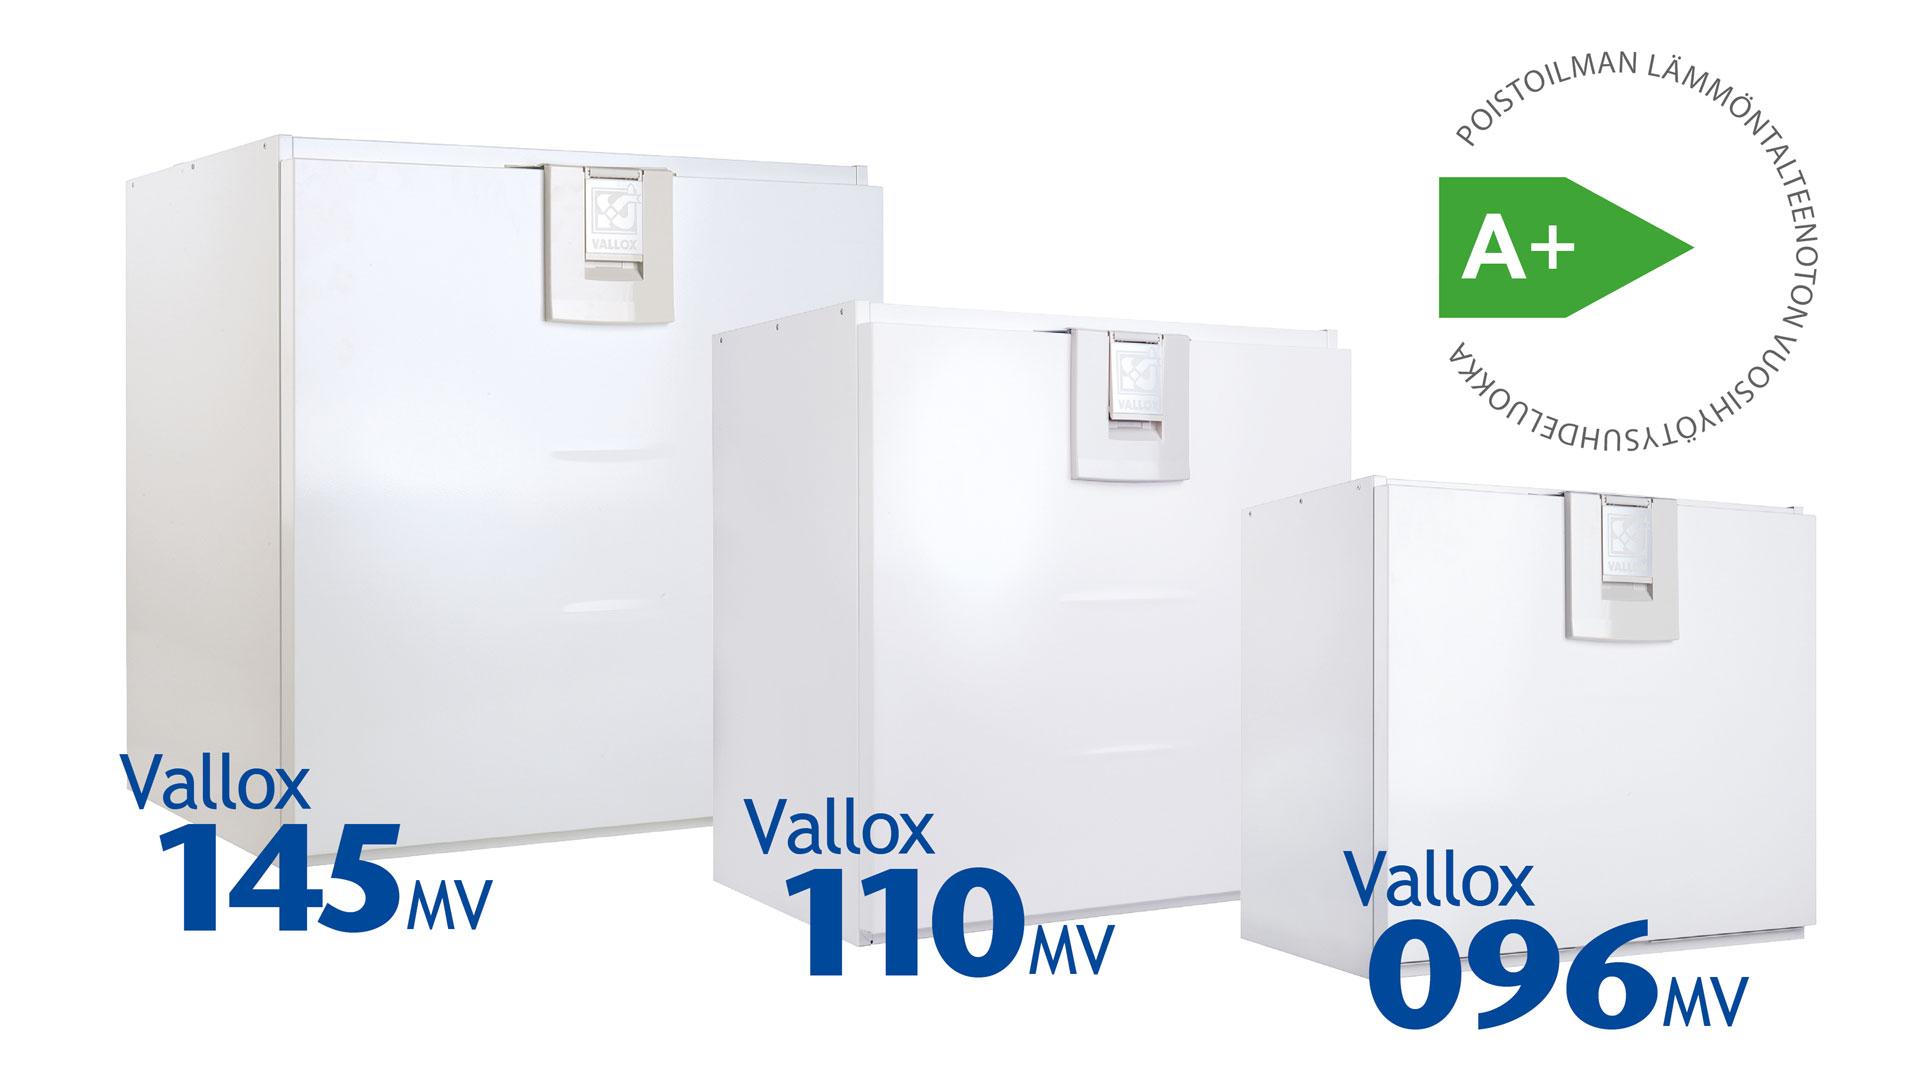 Uuden sukupolven ilmanvaihtokoneet, Vallox 096 MV, Vallox 110 MV ja Vallox 145 MV, eivät ainoastaan vaihda ilmaa, vaan hyödyntävät tehokkaasti poistoilman lämmön.